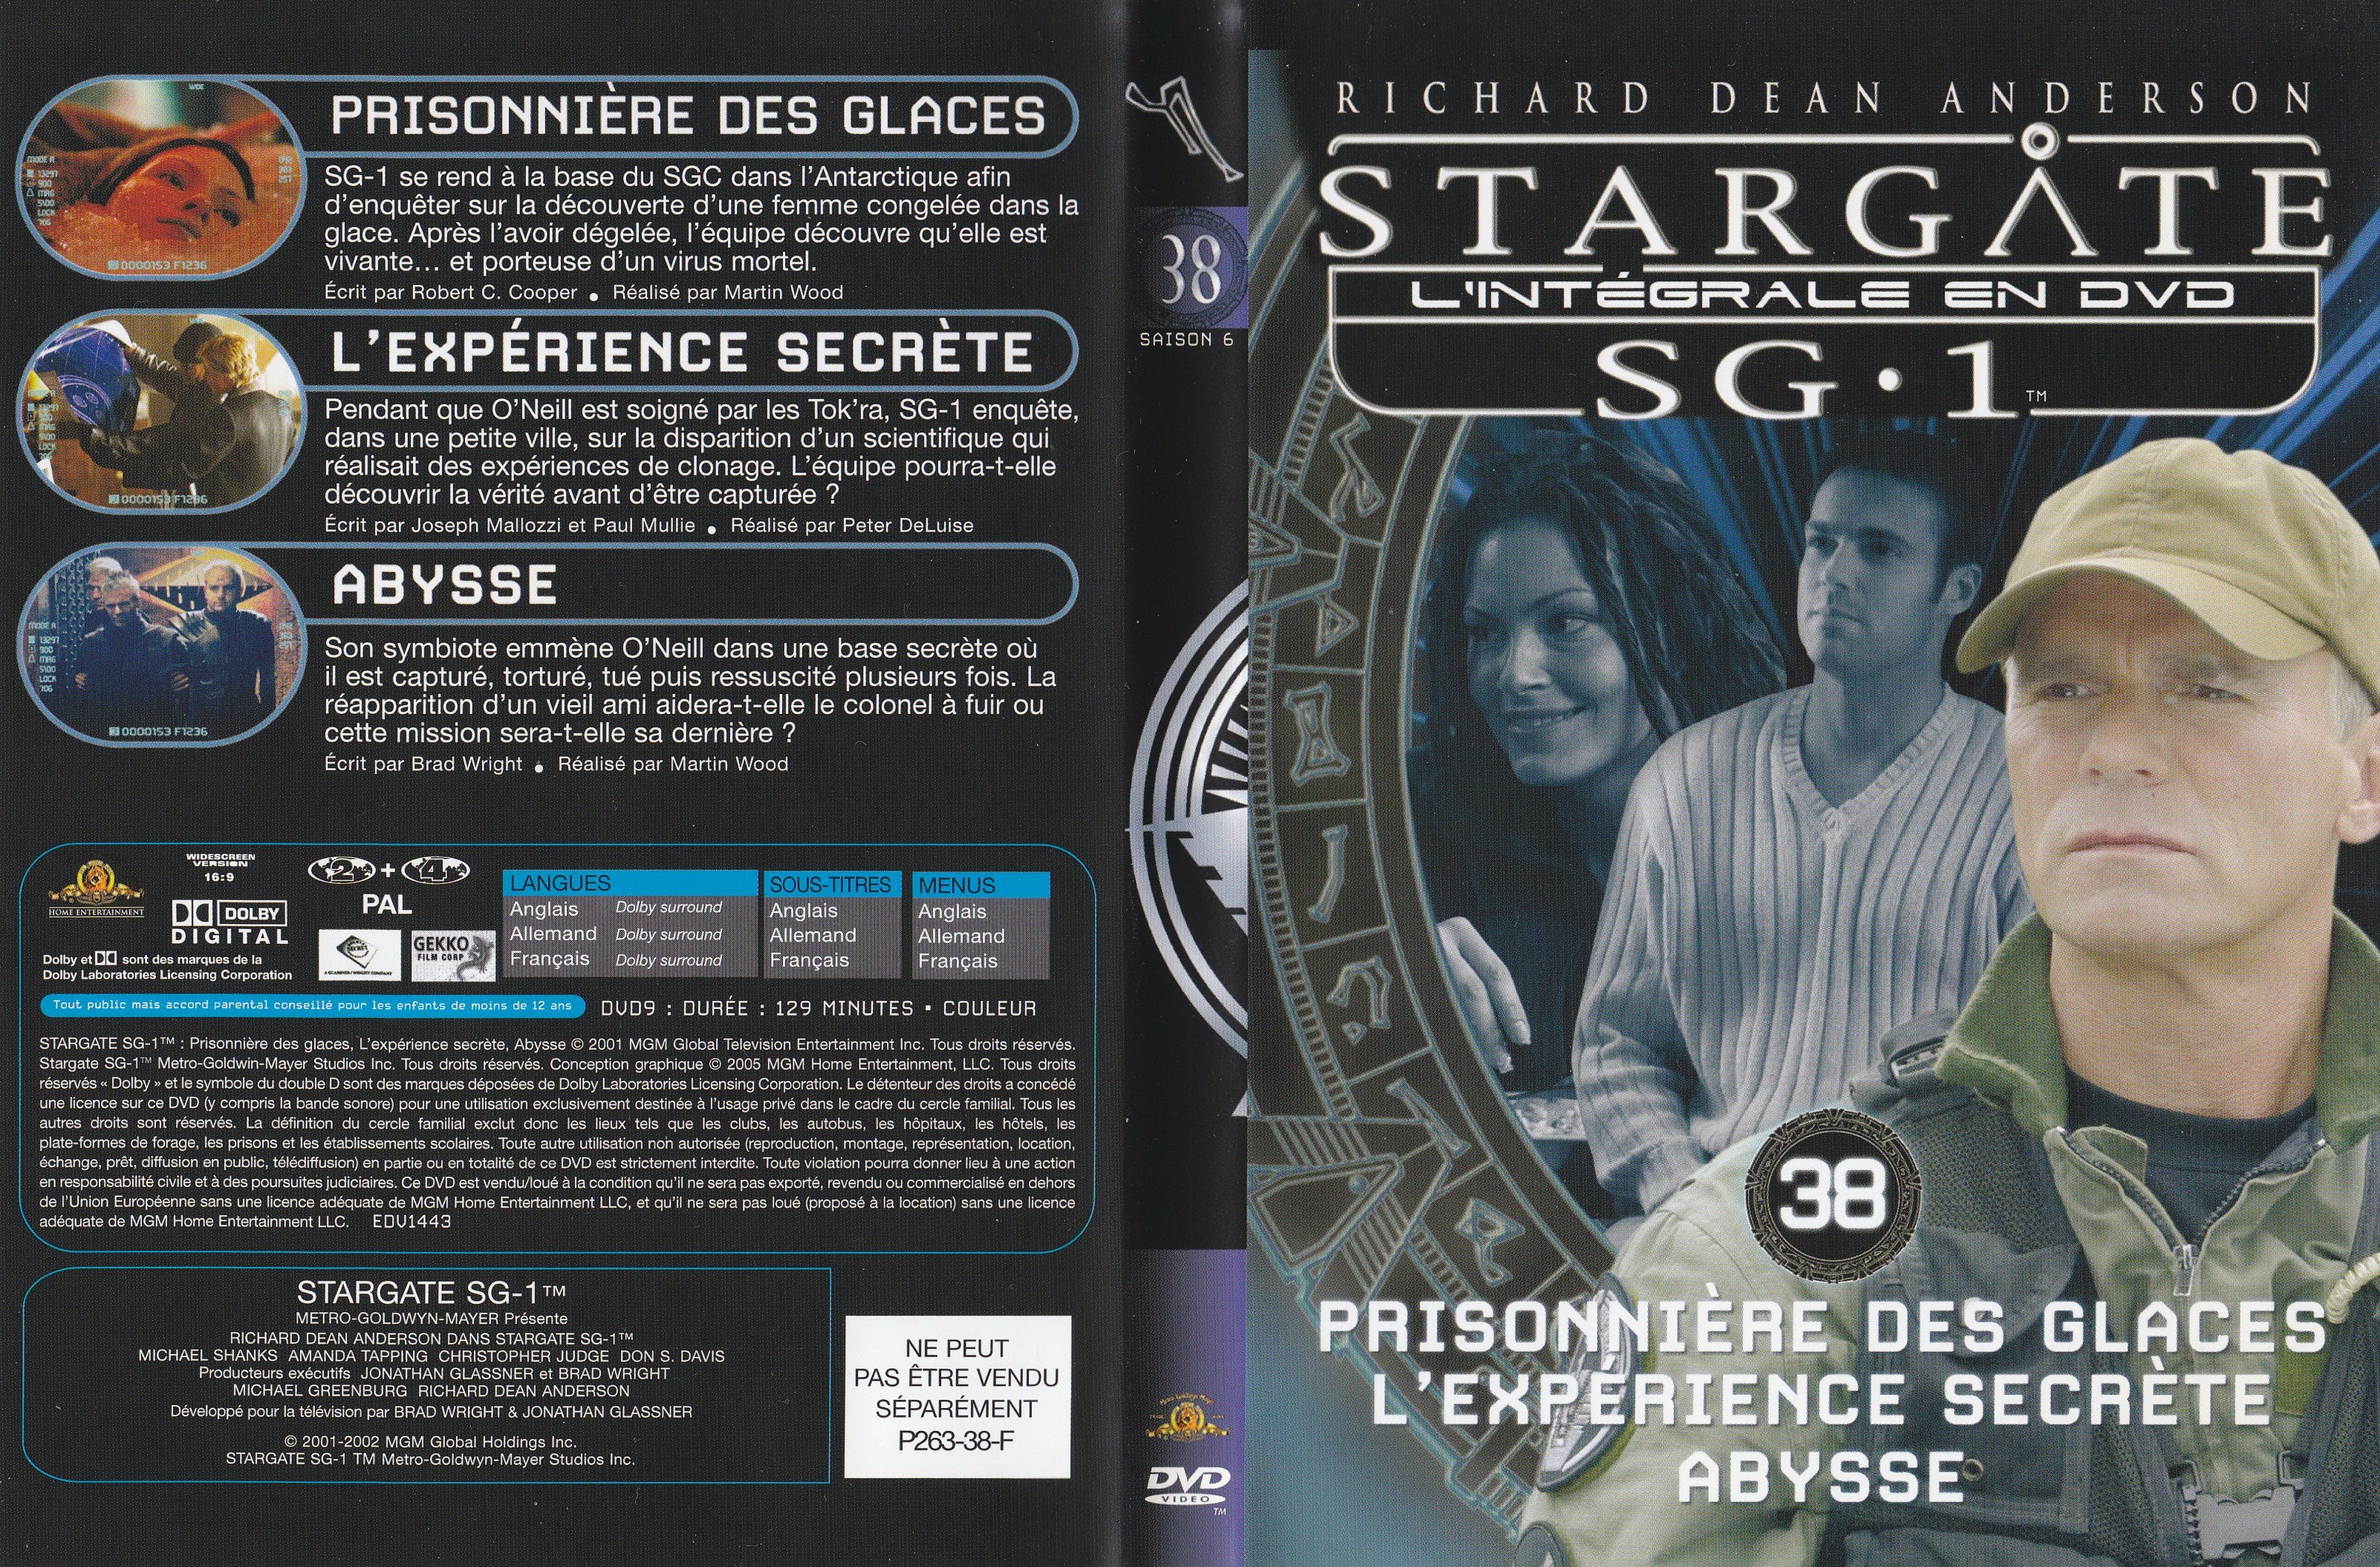 Stargate SG1 Intgrale Saison 6 vol 38